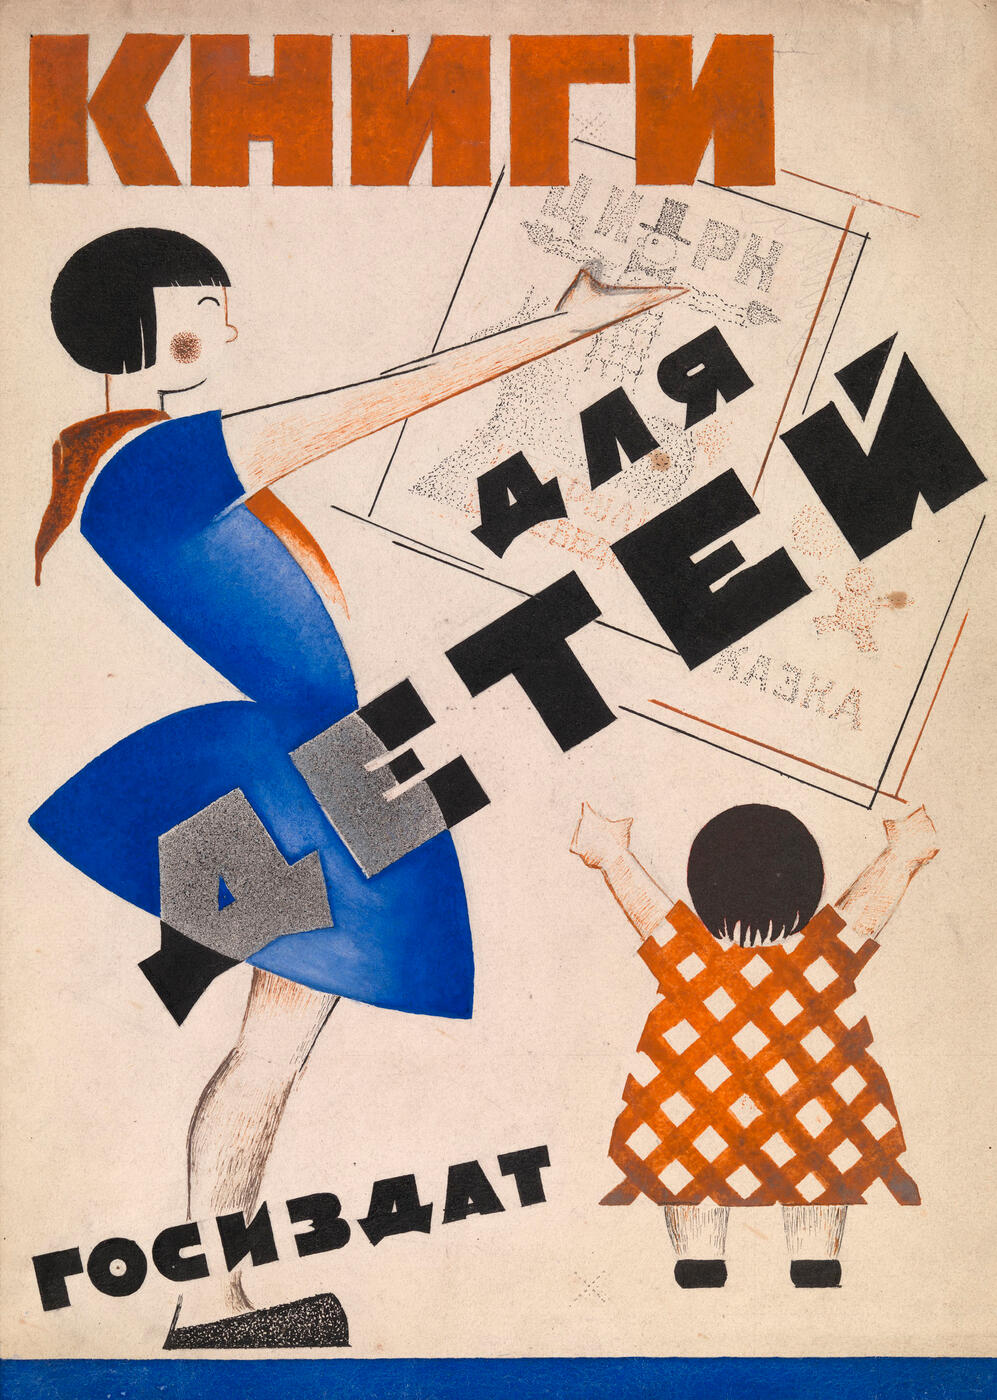 A Poster Design for “Knigi dlya detei”.